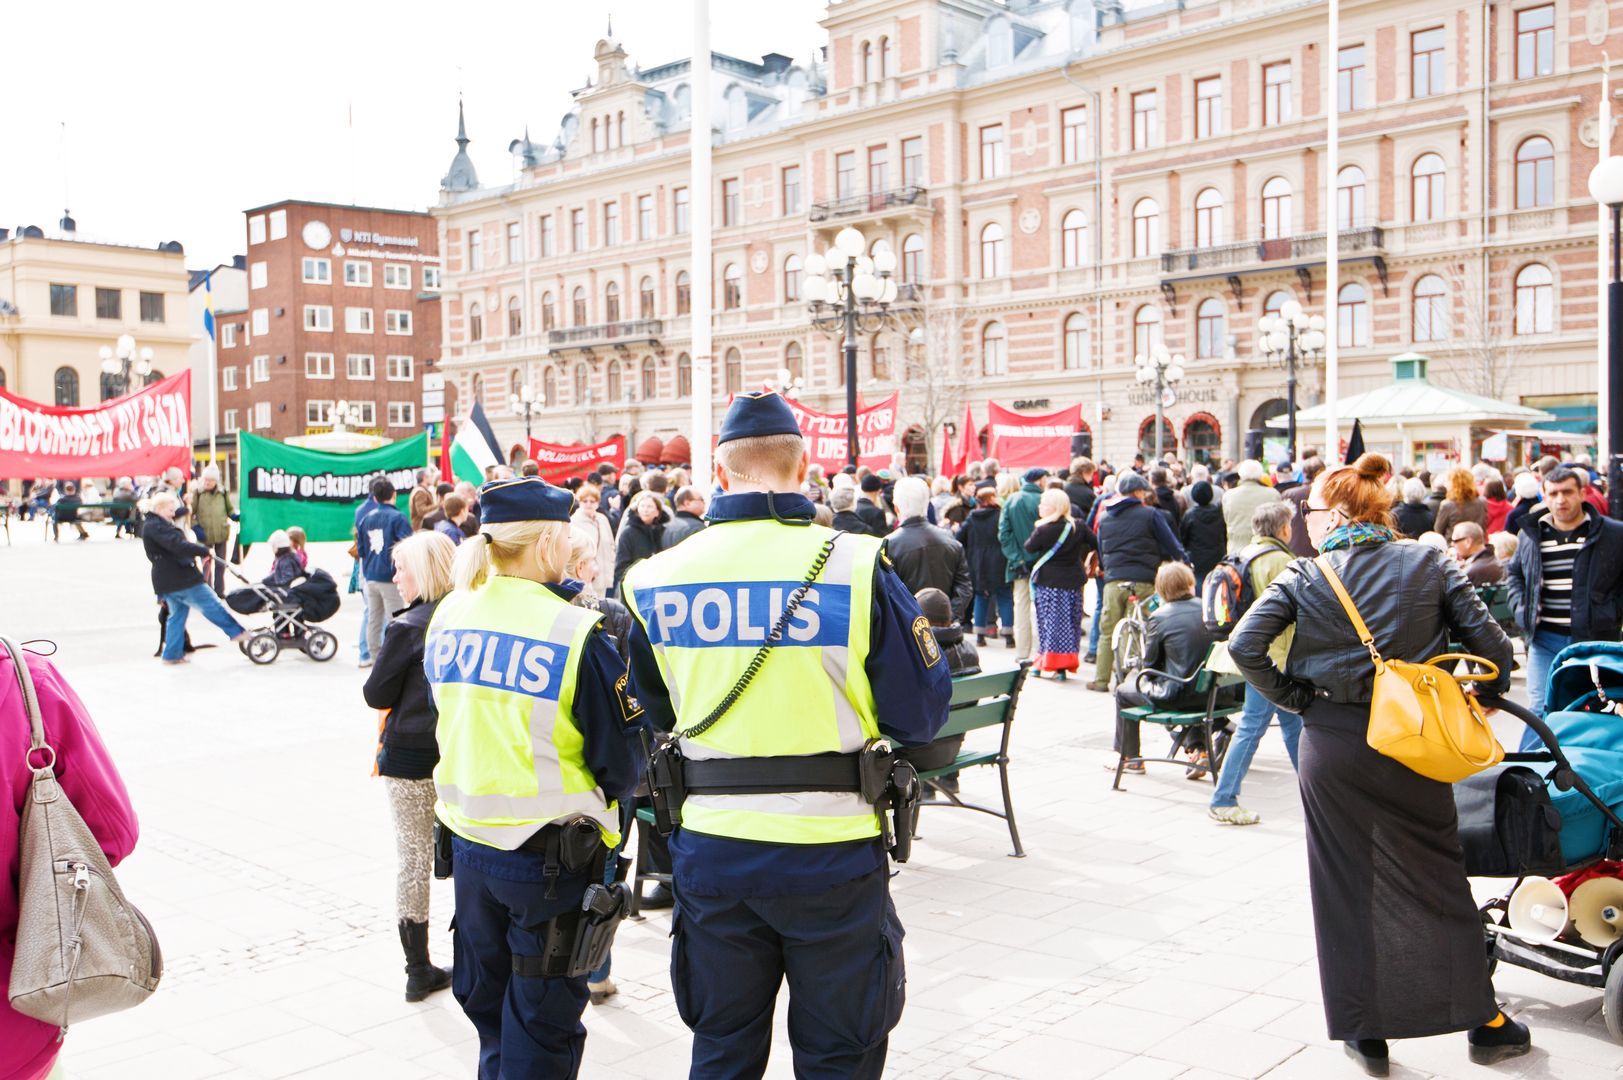 szwecja sztokholm gwałt festiwal